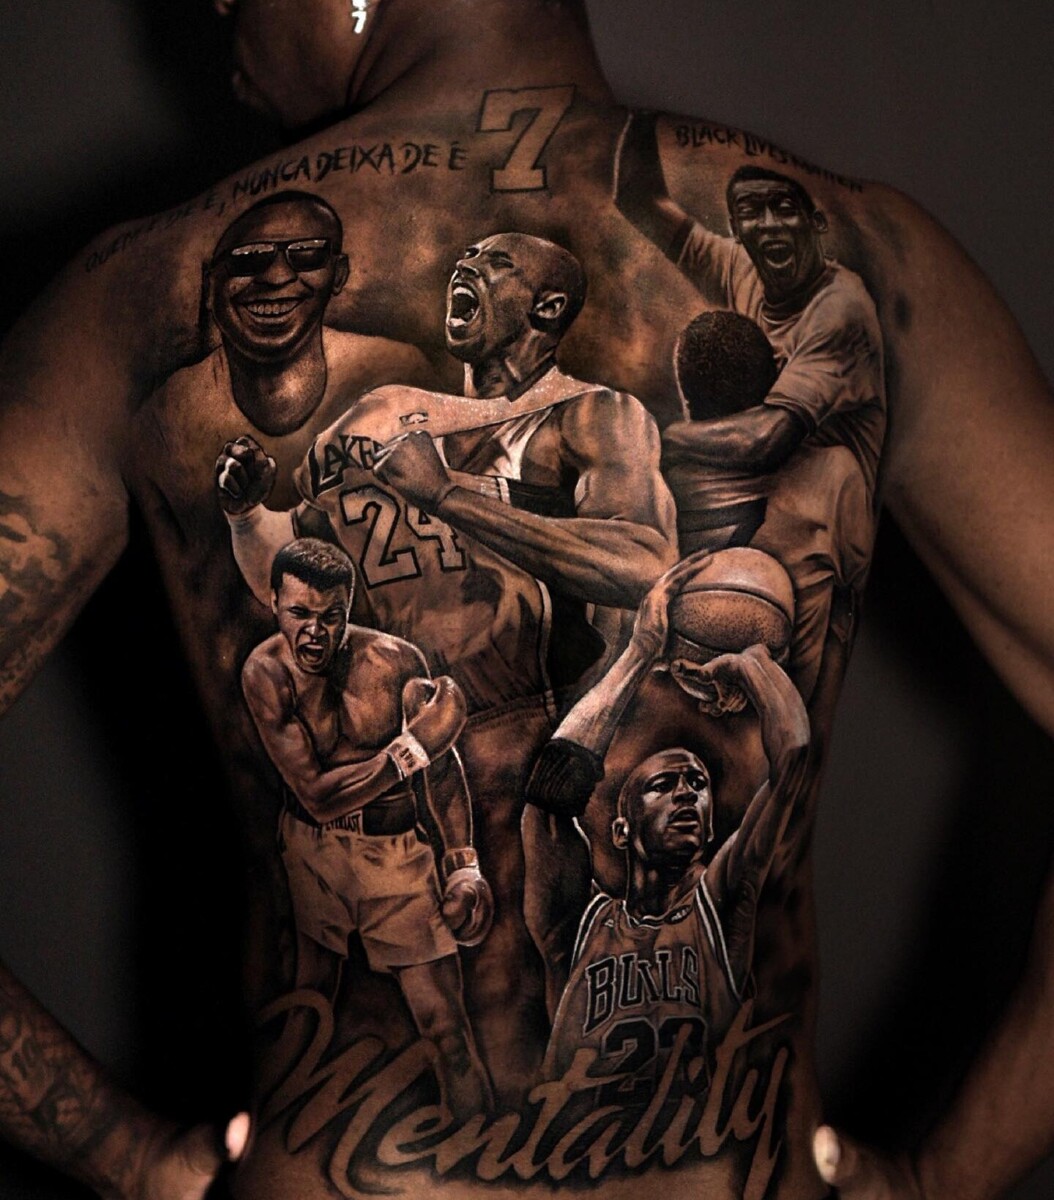 Форвард «Реала» сделал татуировку во всю спину с изображением Пеле, Джордана и Али